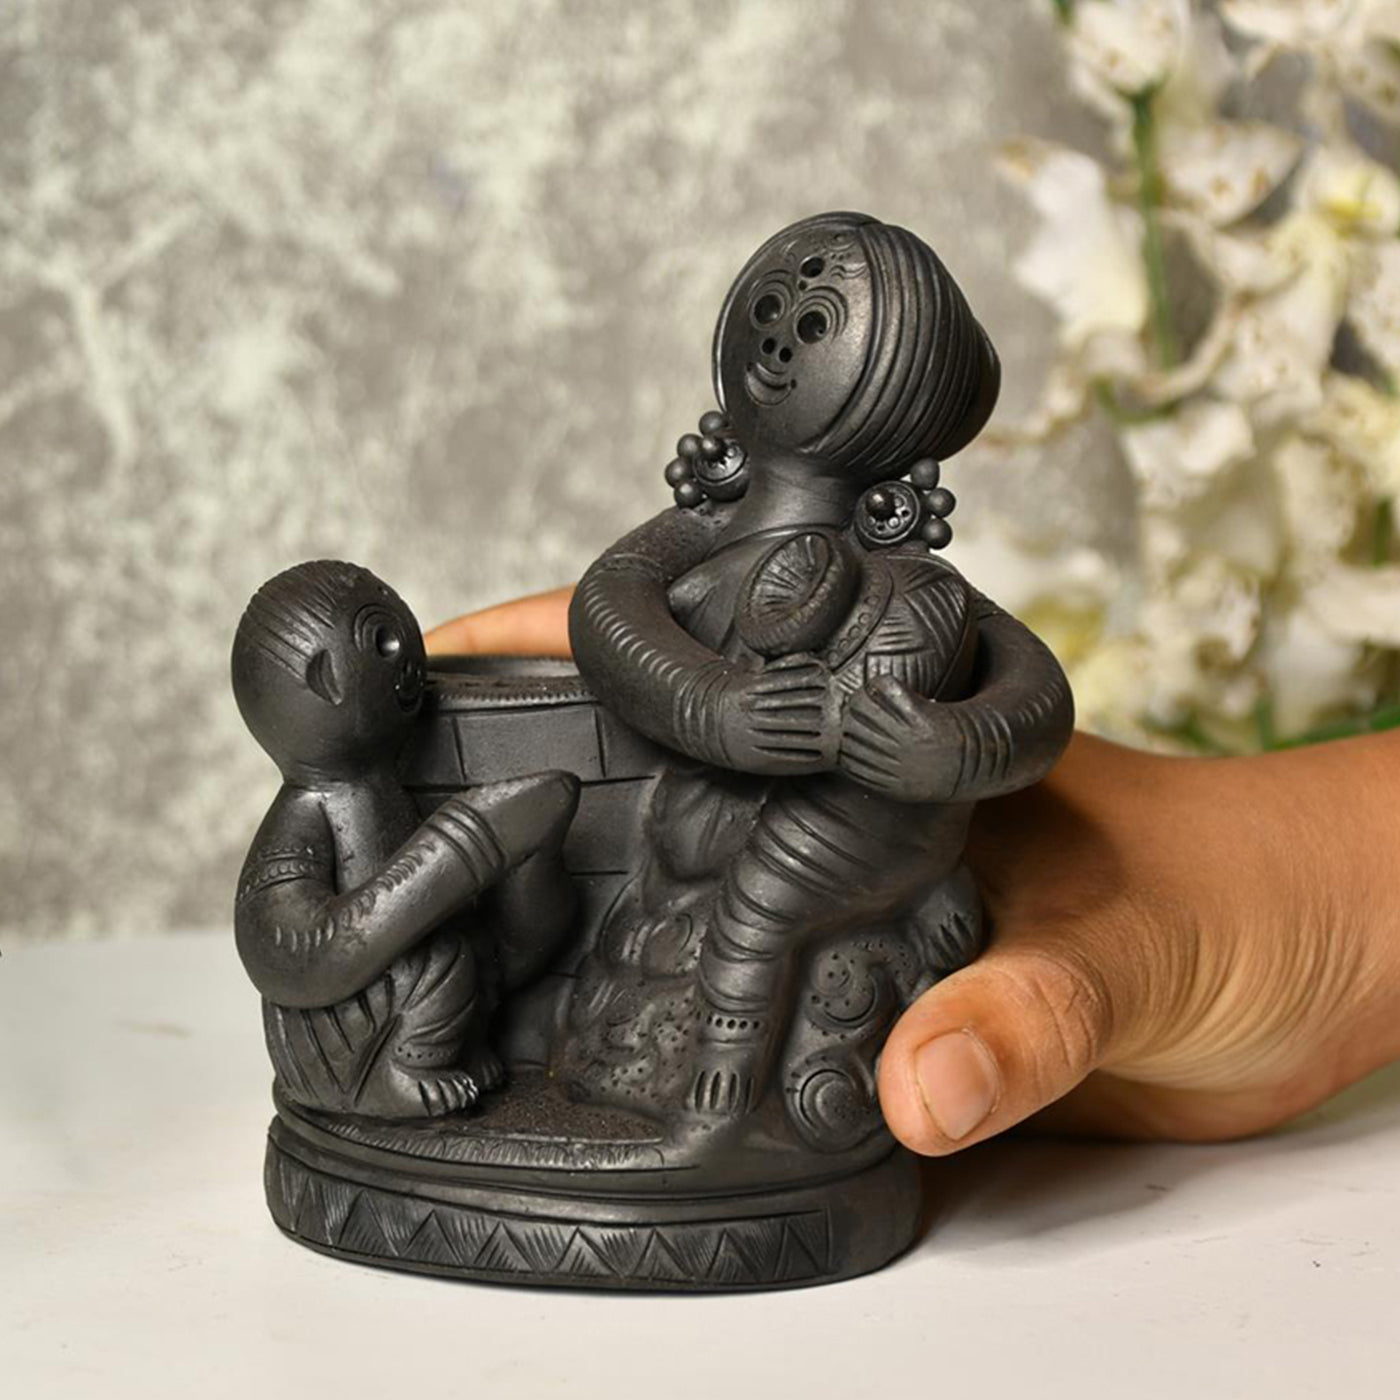 Black Terracotta Mother-Son Artisan Tabletop Decor for Home